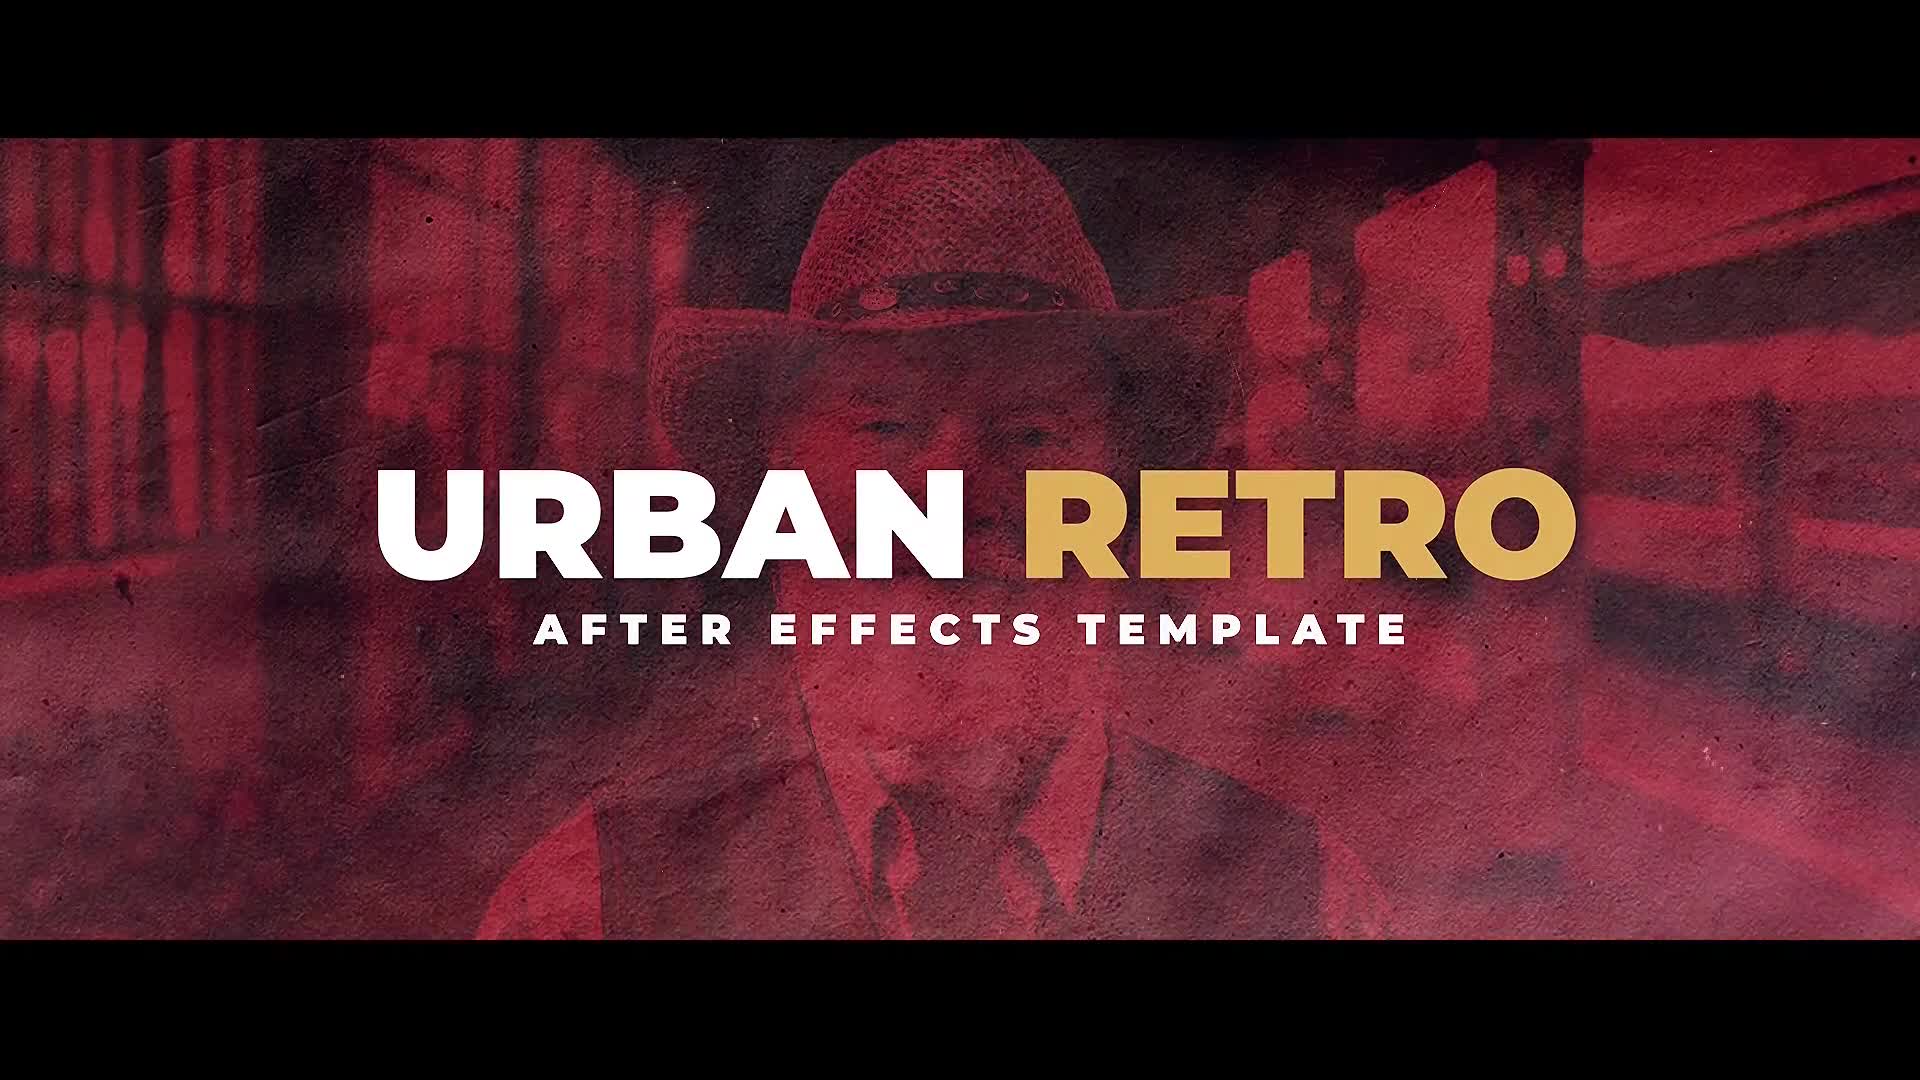 Urban Retro Videohive 24223734 Premiere Pro Image 1